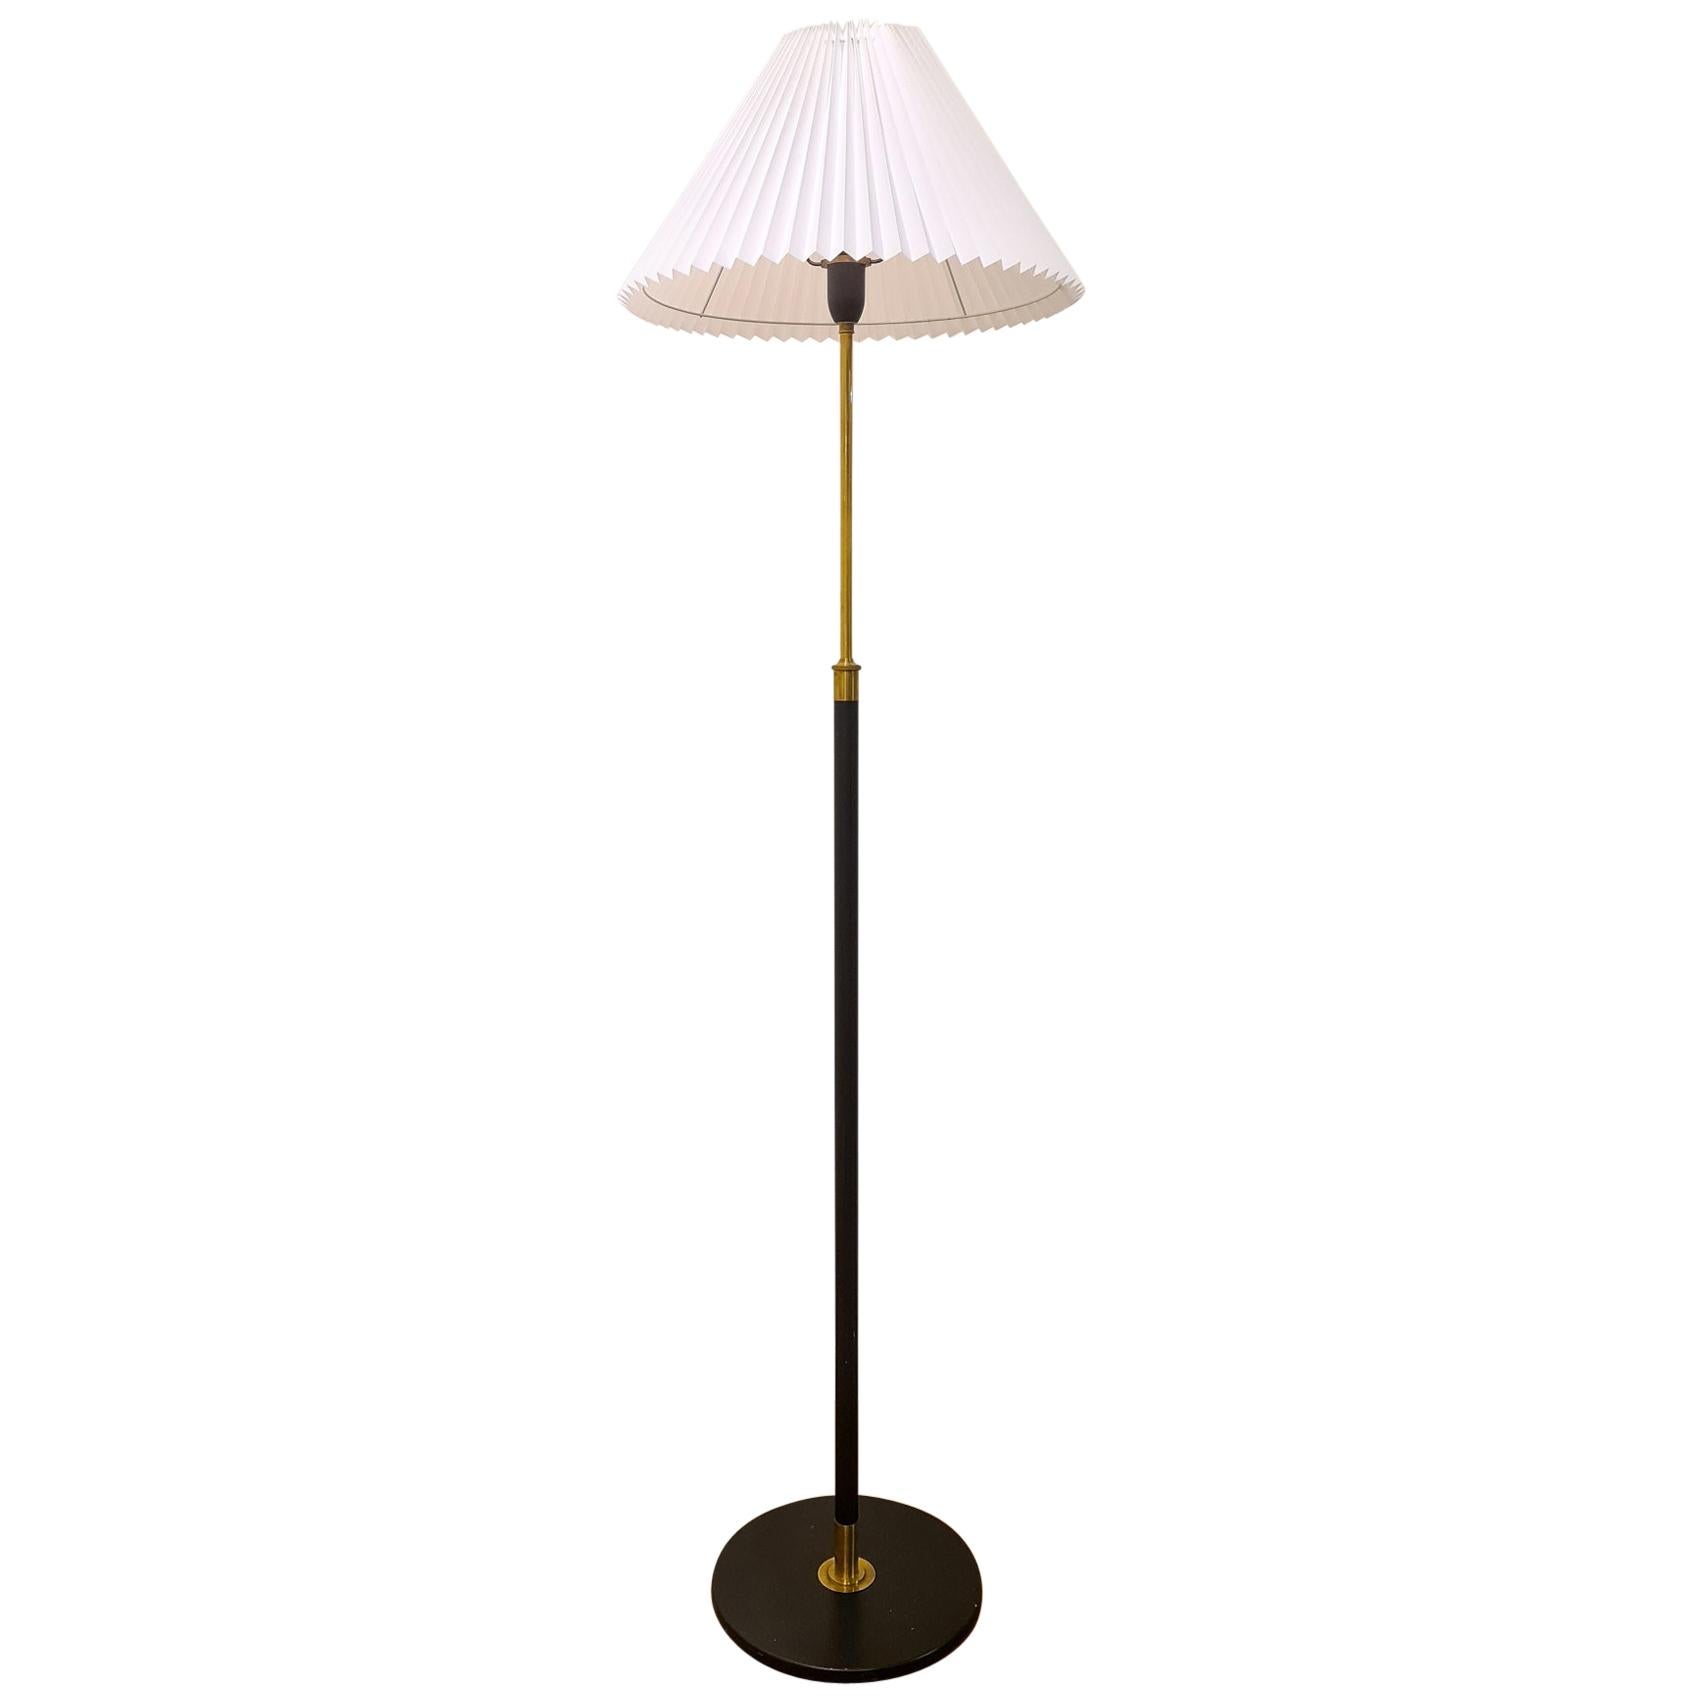 Danish Midcentury Le Klint Floor Lamp No 351 Designed by Aage Petersen, Denmark